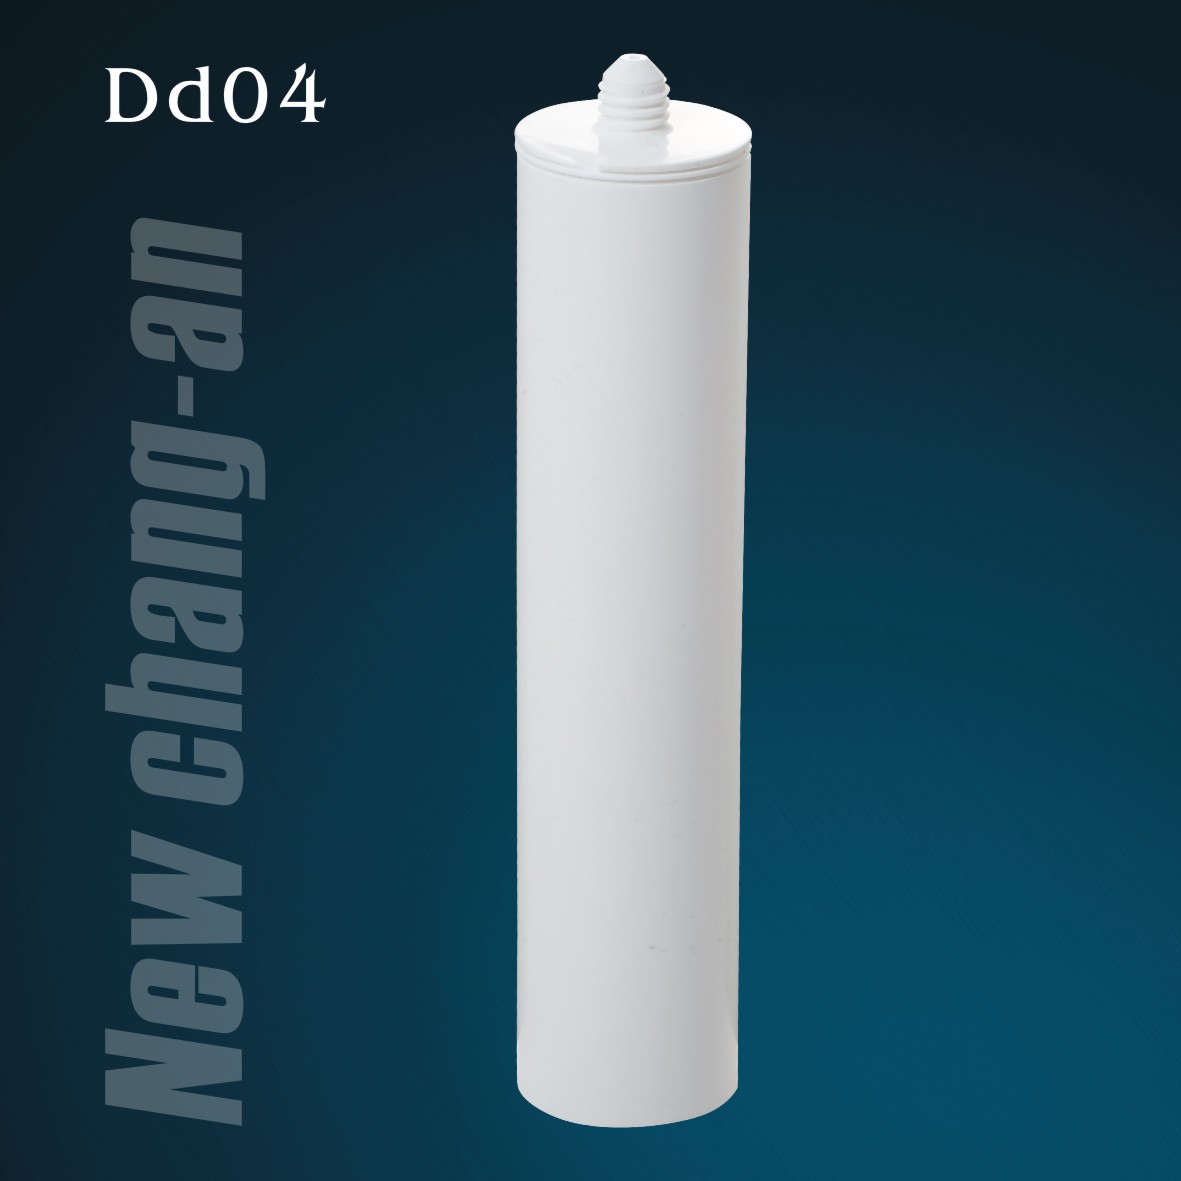 Hộp mực nhựa HDPE rỗng 300ml cho chất bịt kín silicone Dd04